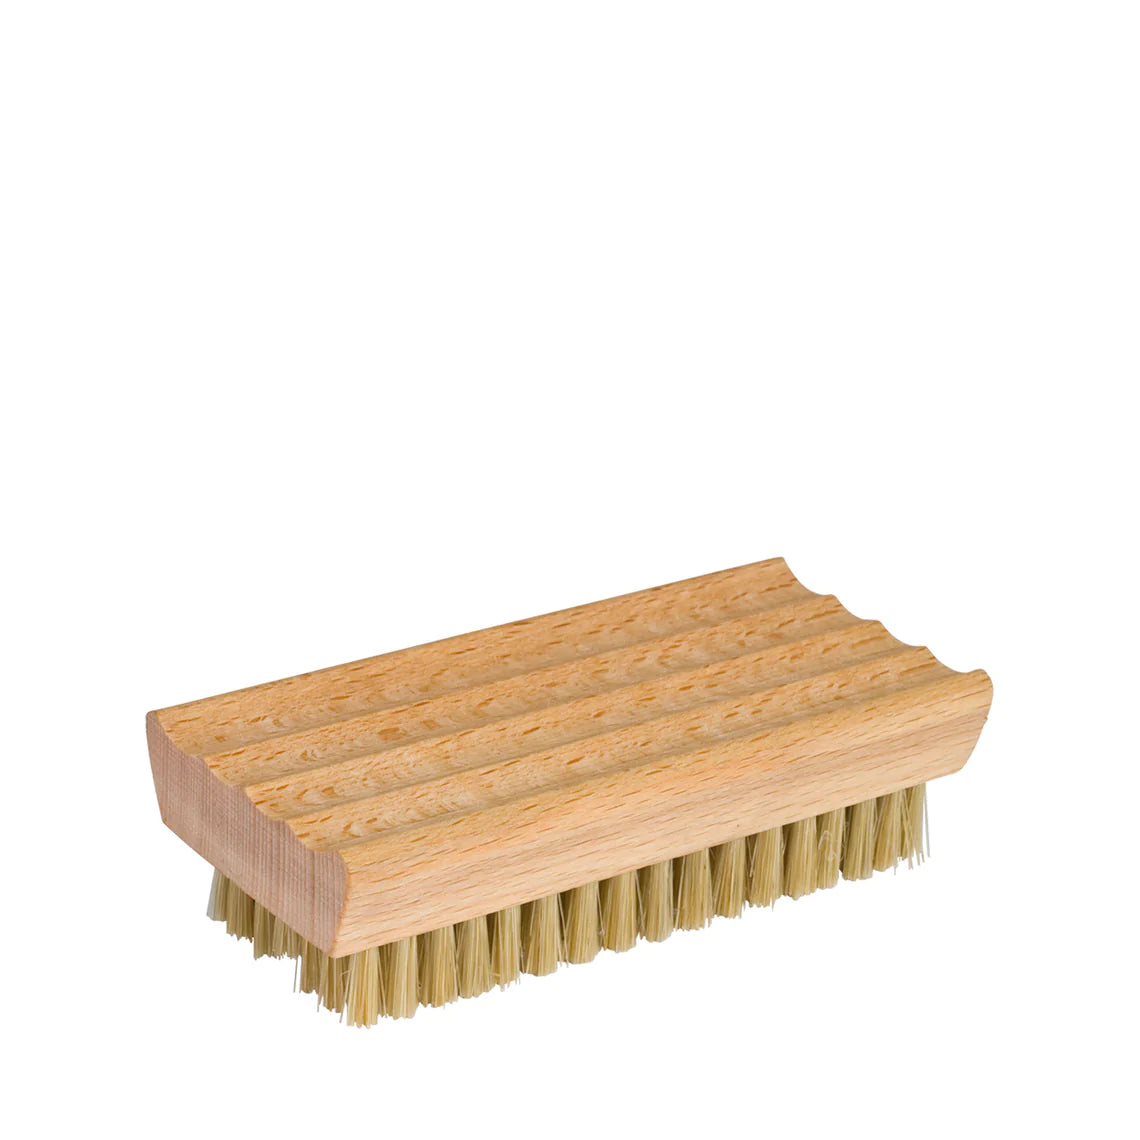 Redecker Timber Nail Brush Soap Holder